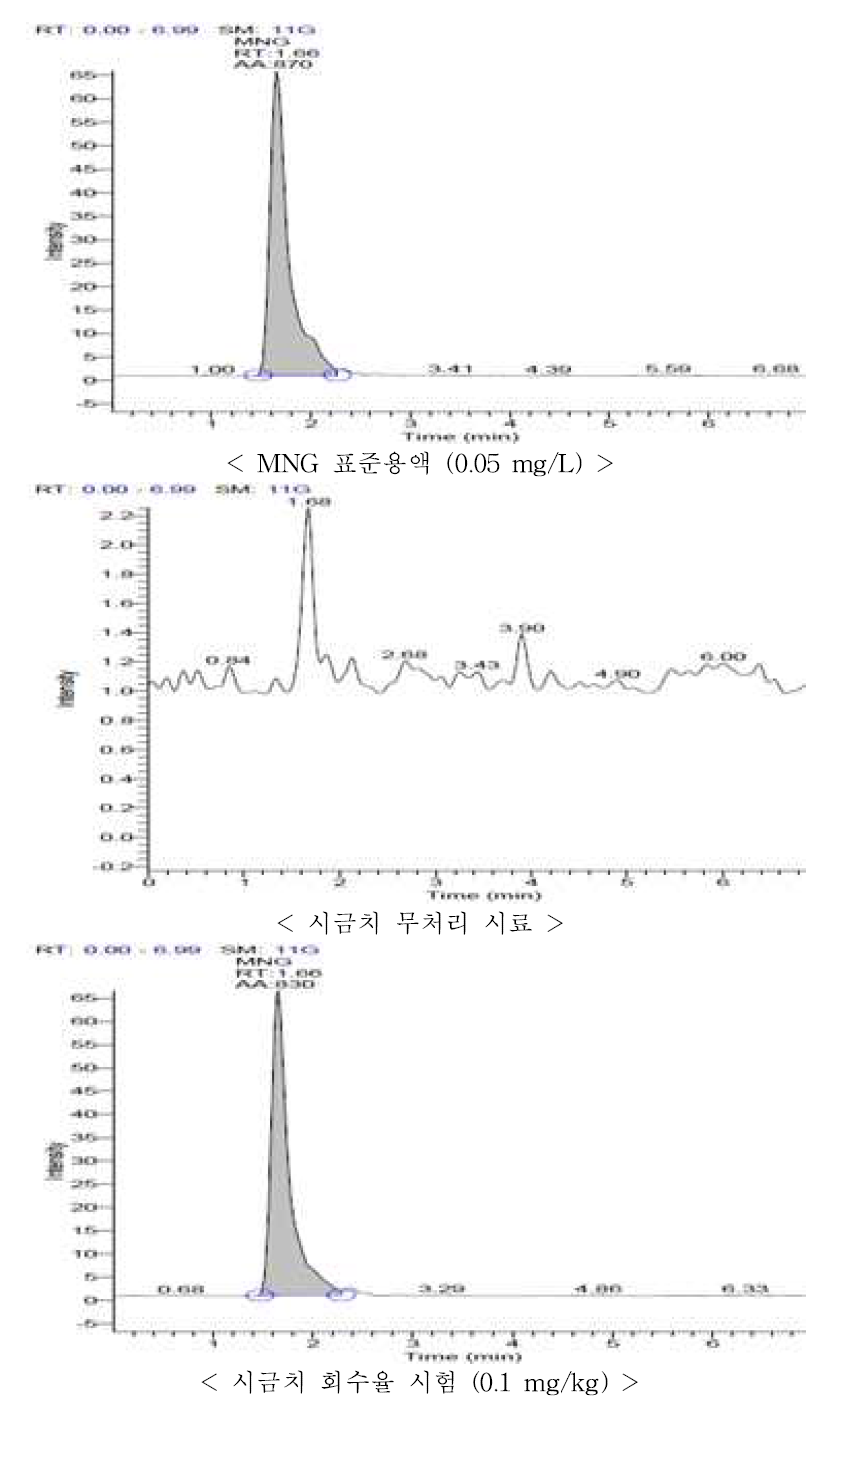 시금치 중 MNG의 회수율 크로마토그램